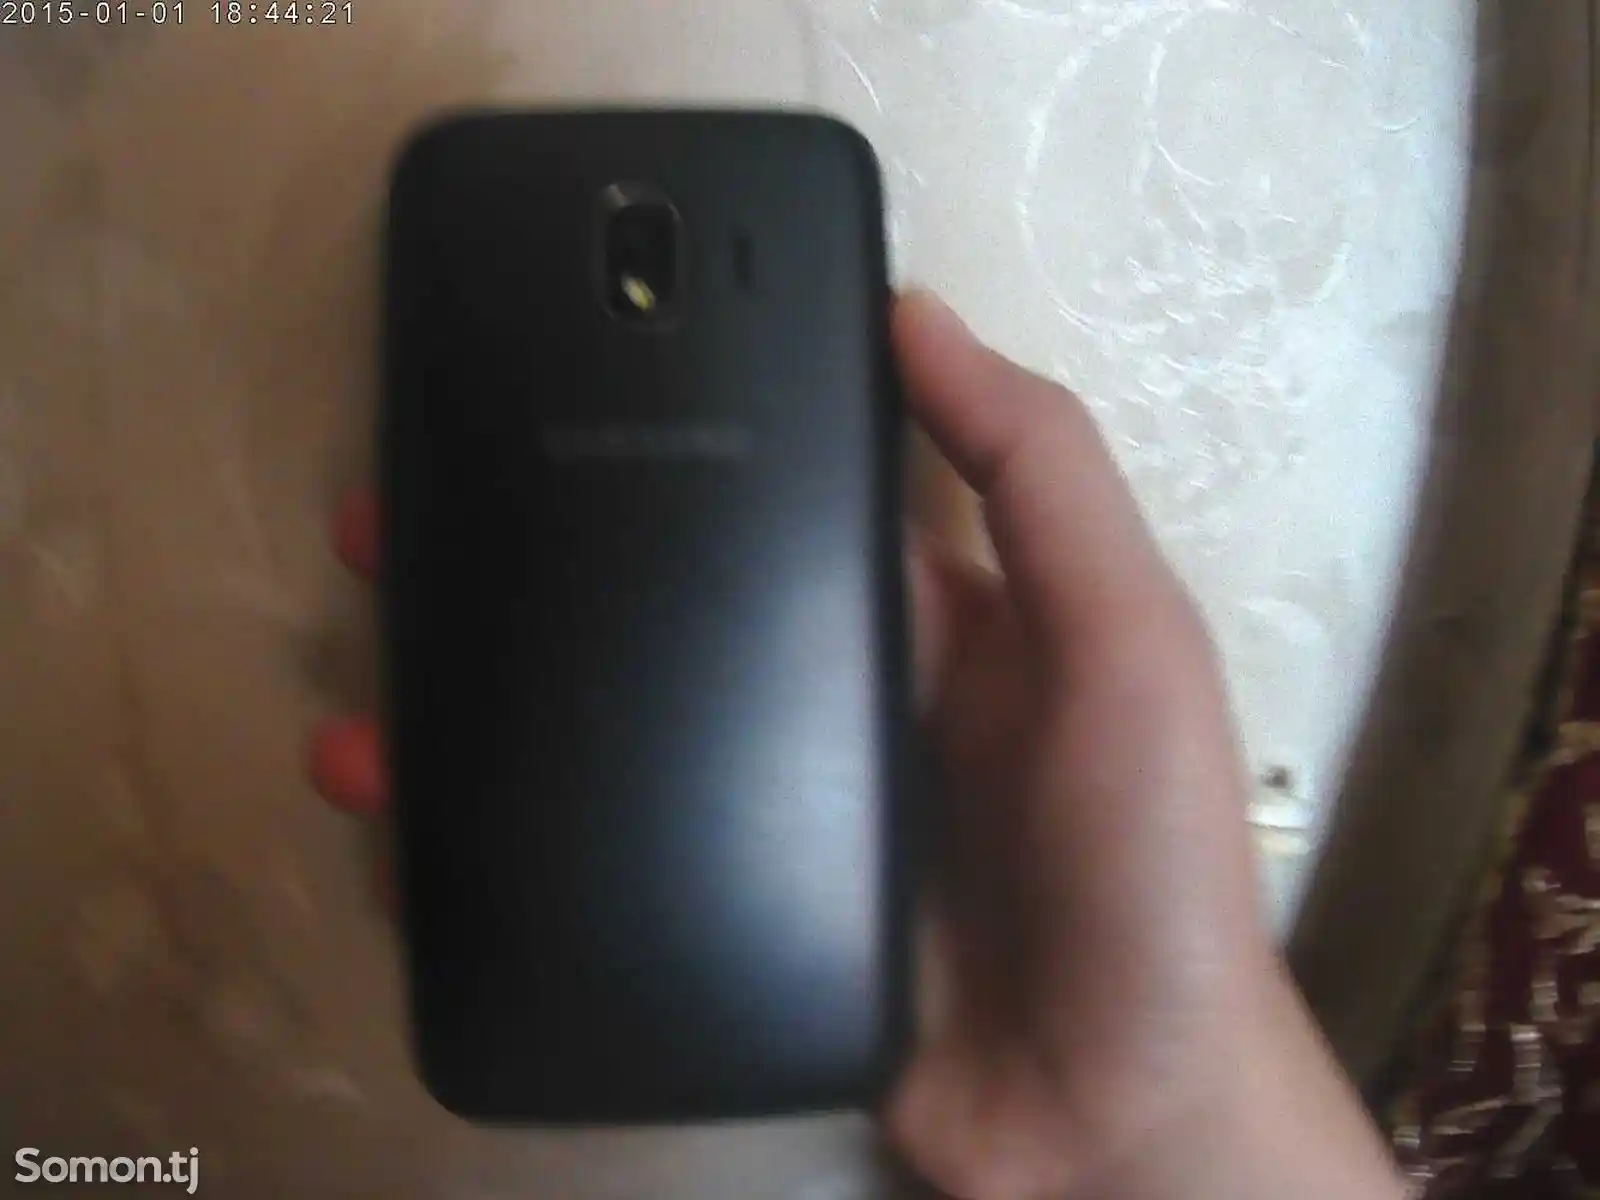 Samsung Galaxy J2-2